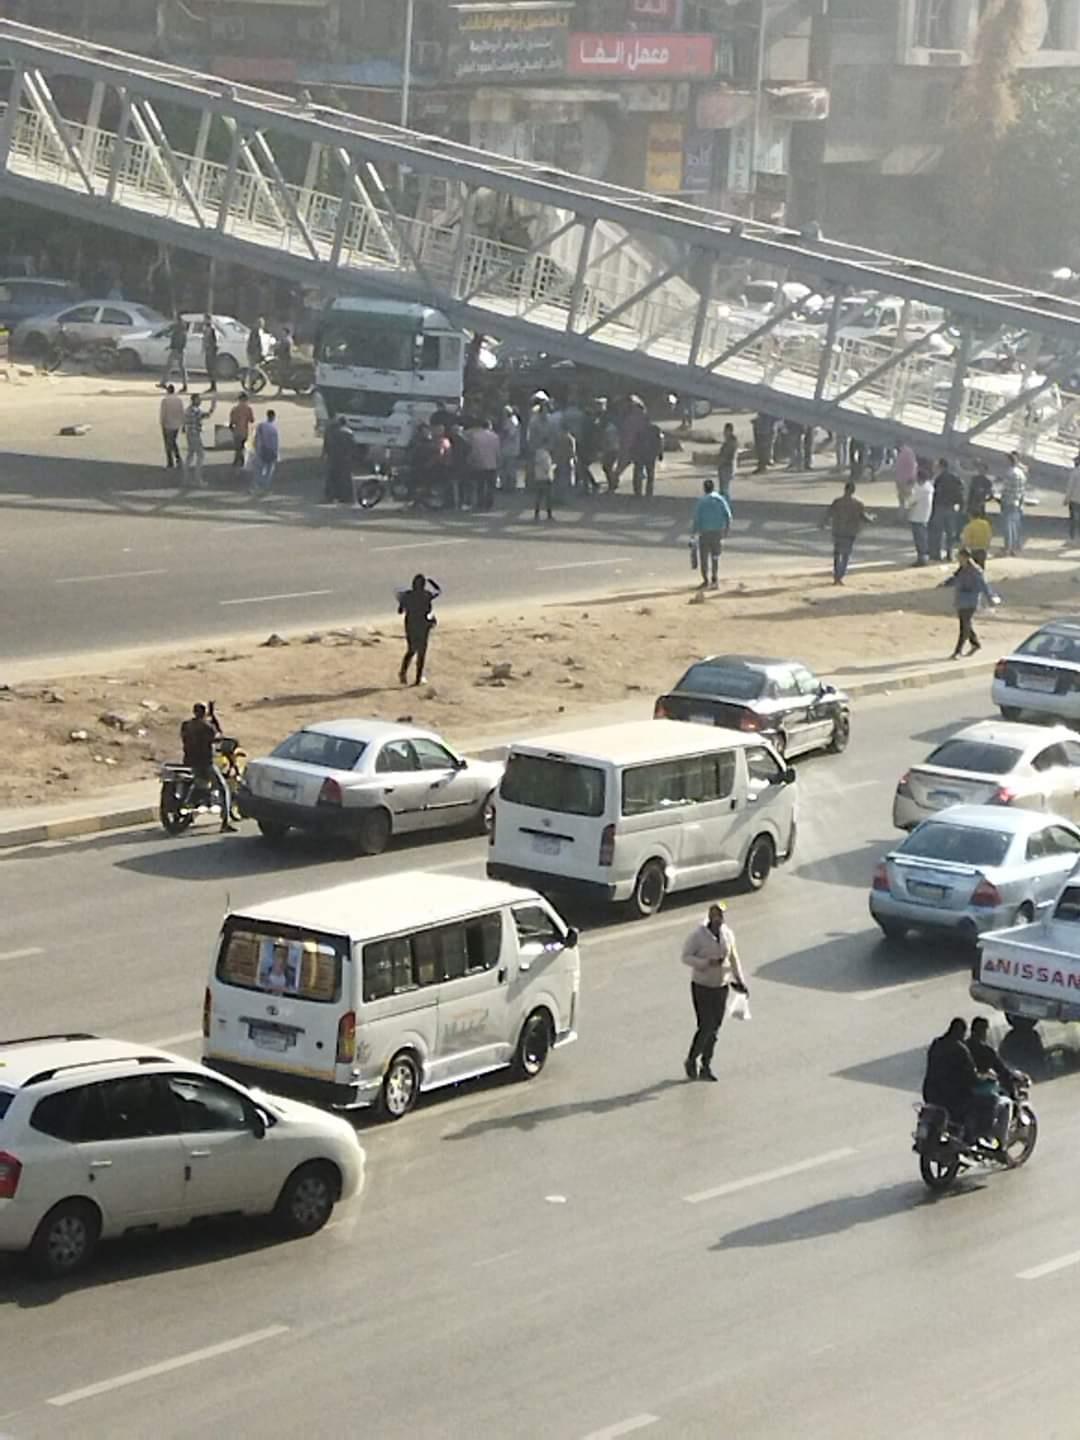 بالتفاصيل والصور سقوط كوبري مشاة في شارع أحمد عرابي بالجيزة